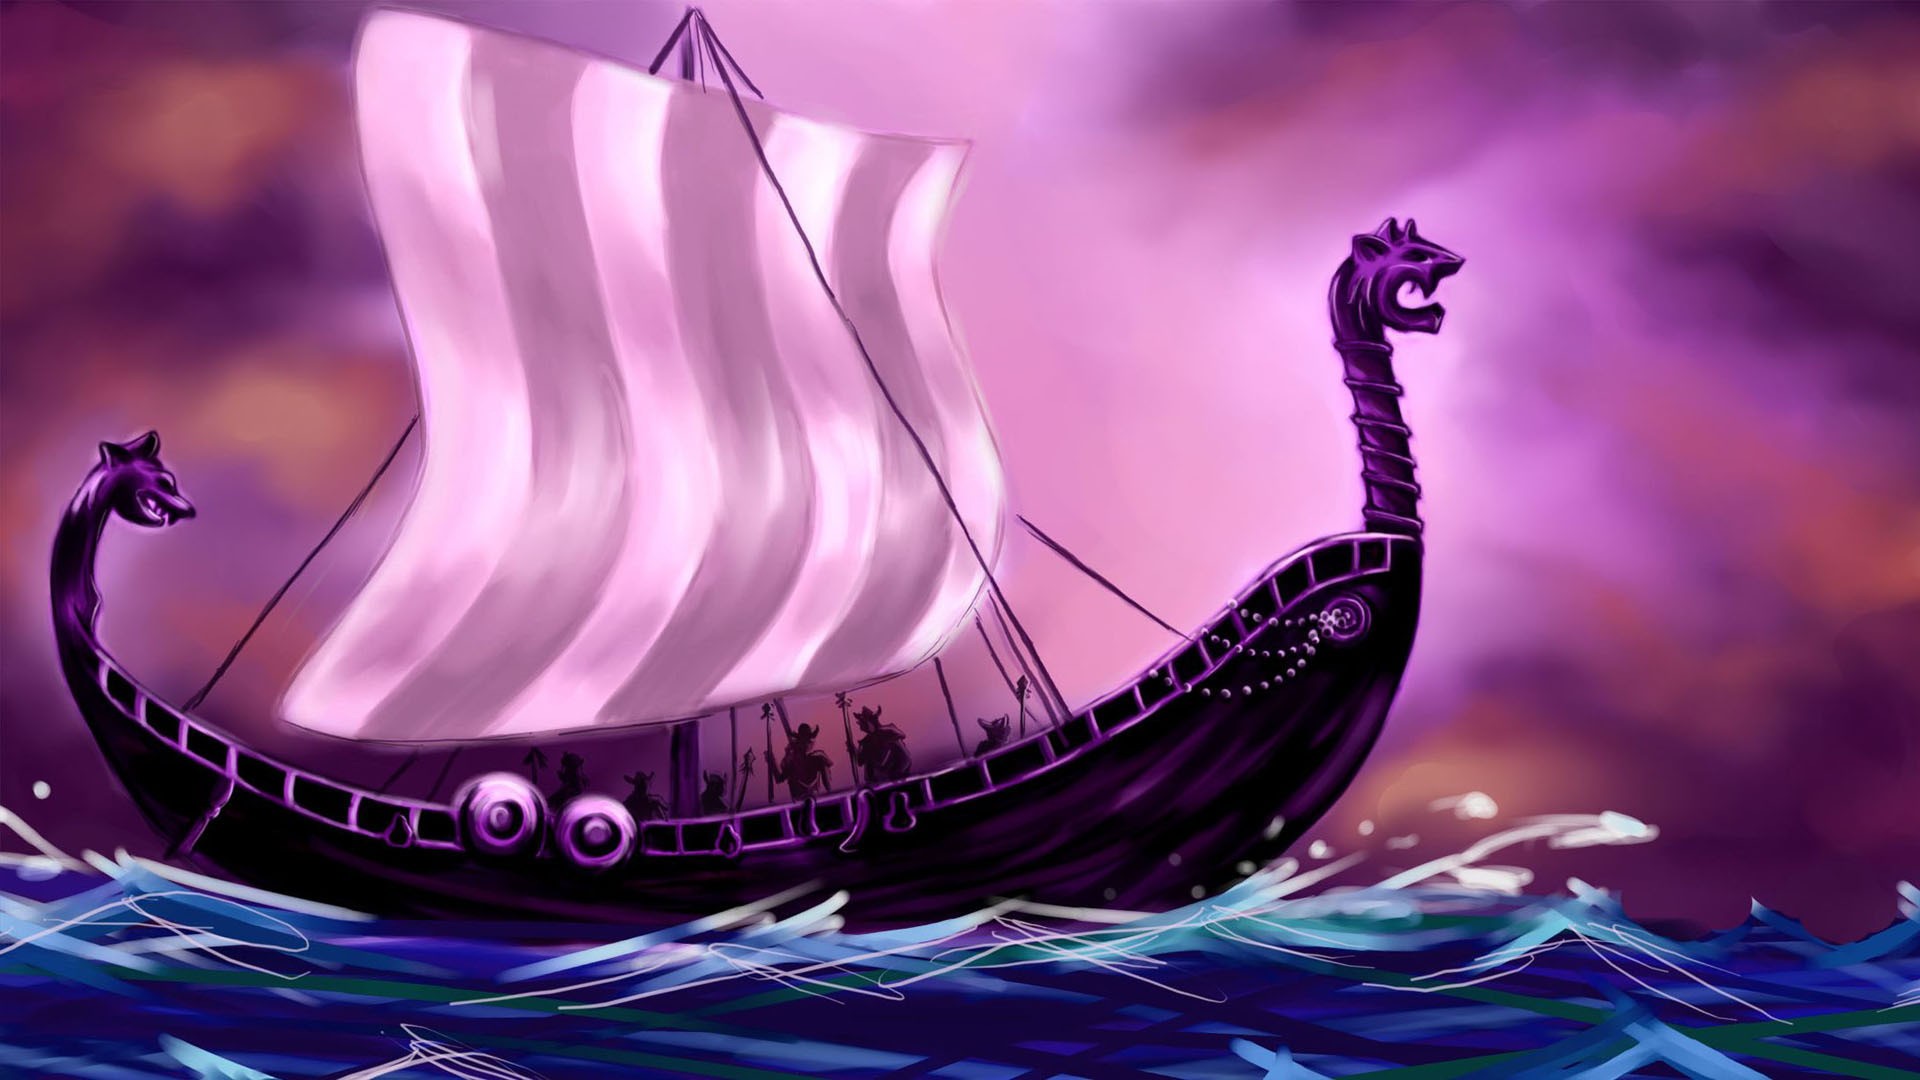 Vikings, Fantasy art, Artwork, Boat Wallpaper